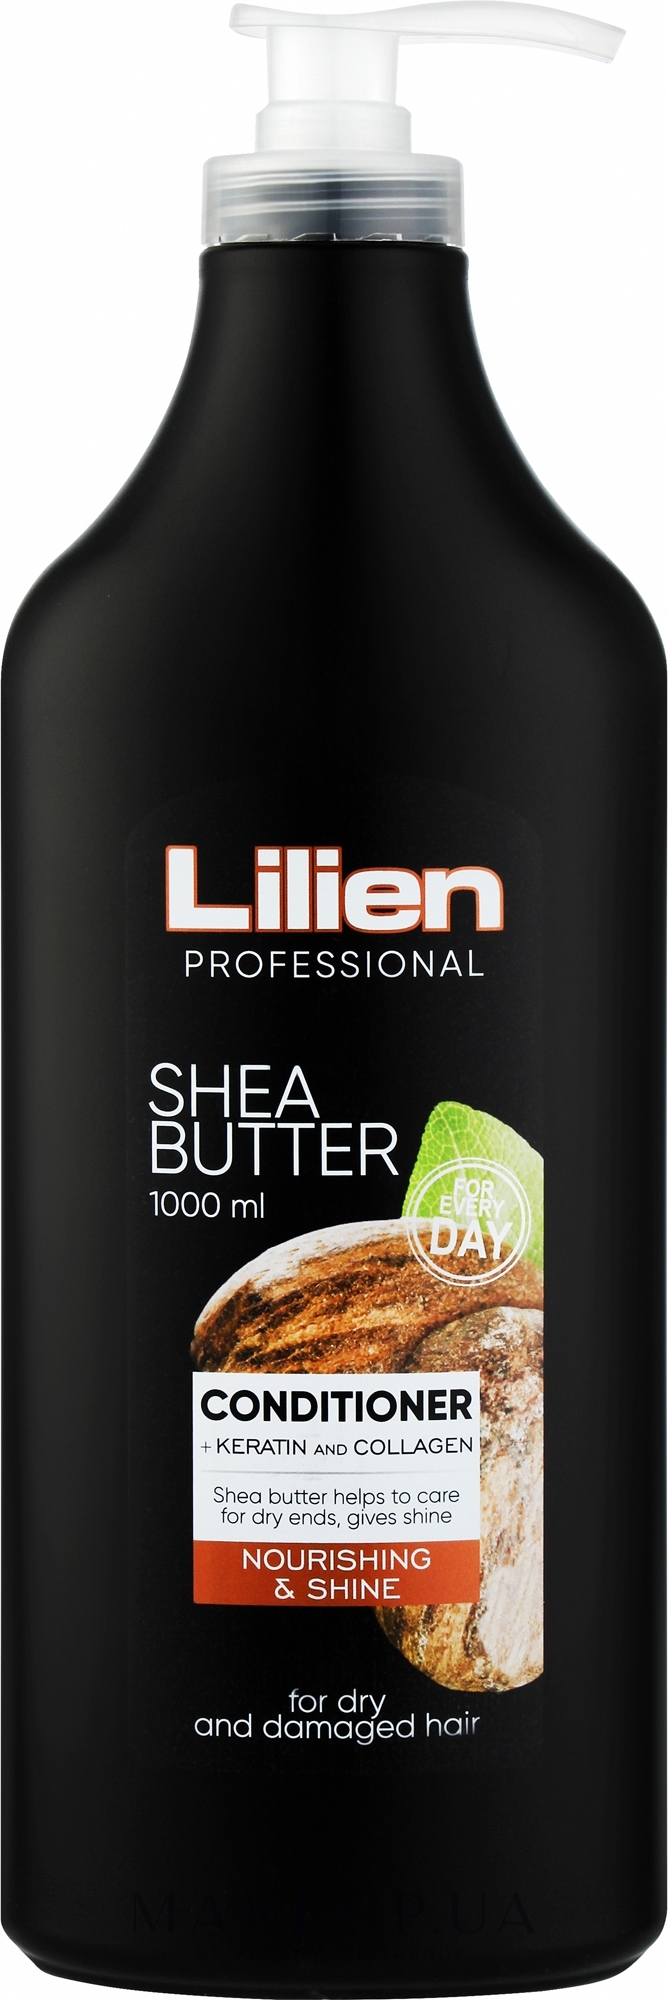 Кондиционер для сухих и поврежденных волос - Lilien Shea Butter Conditioner — фото 1000ml